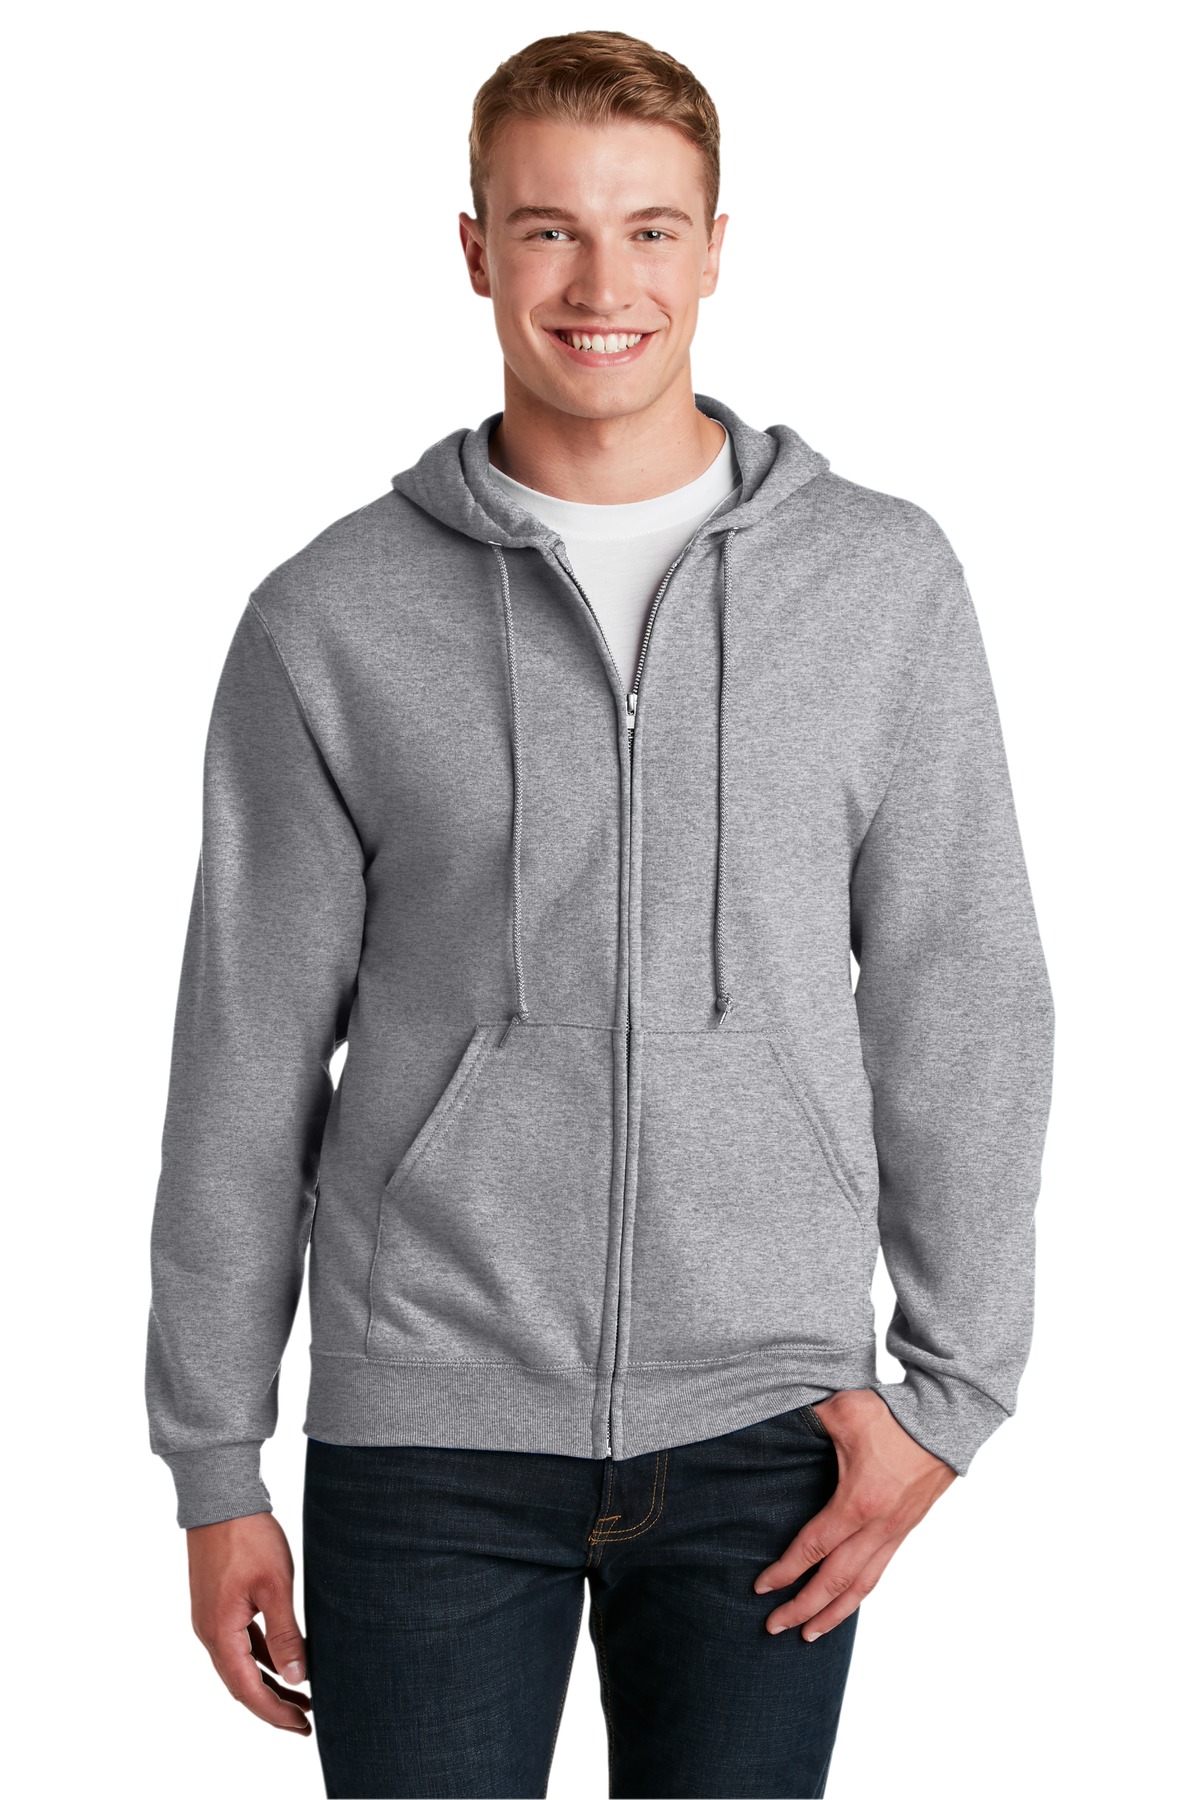 JERZEES - NuBlend Full-Zip Hooded Sweatshirt.  993M